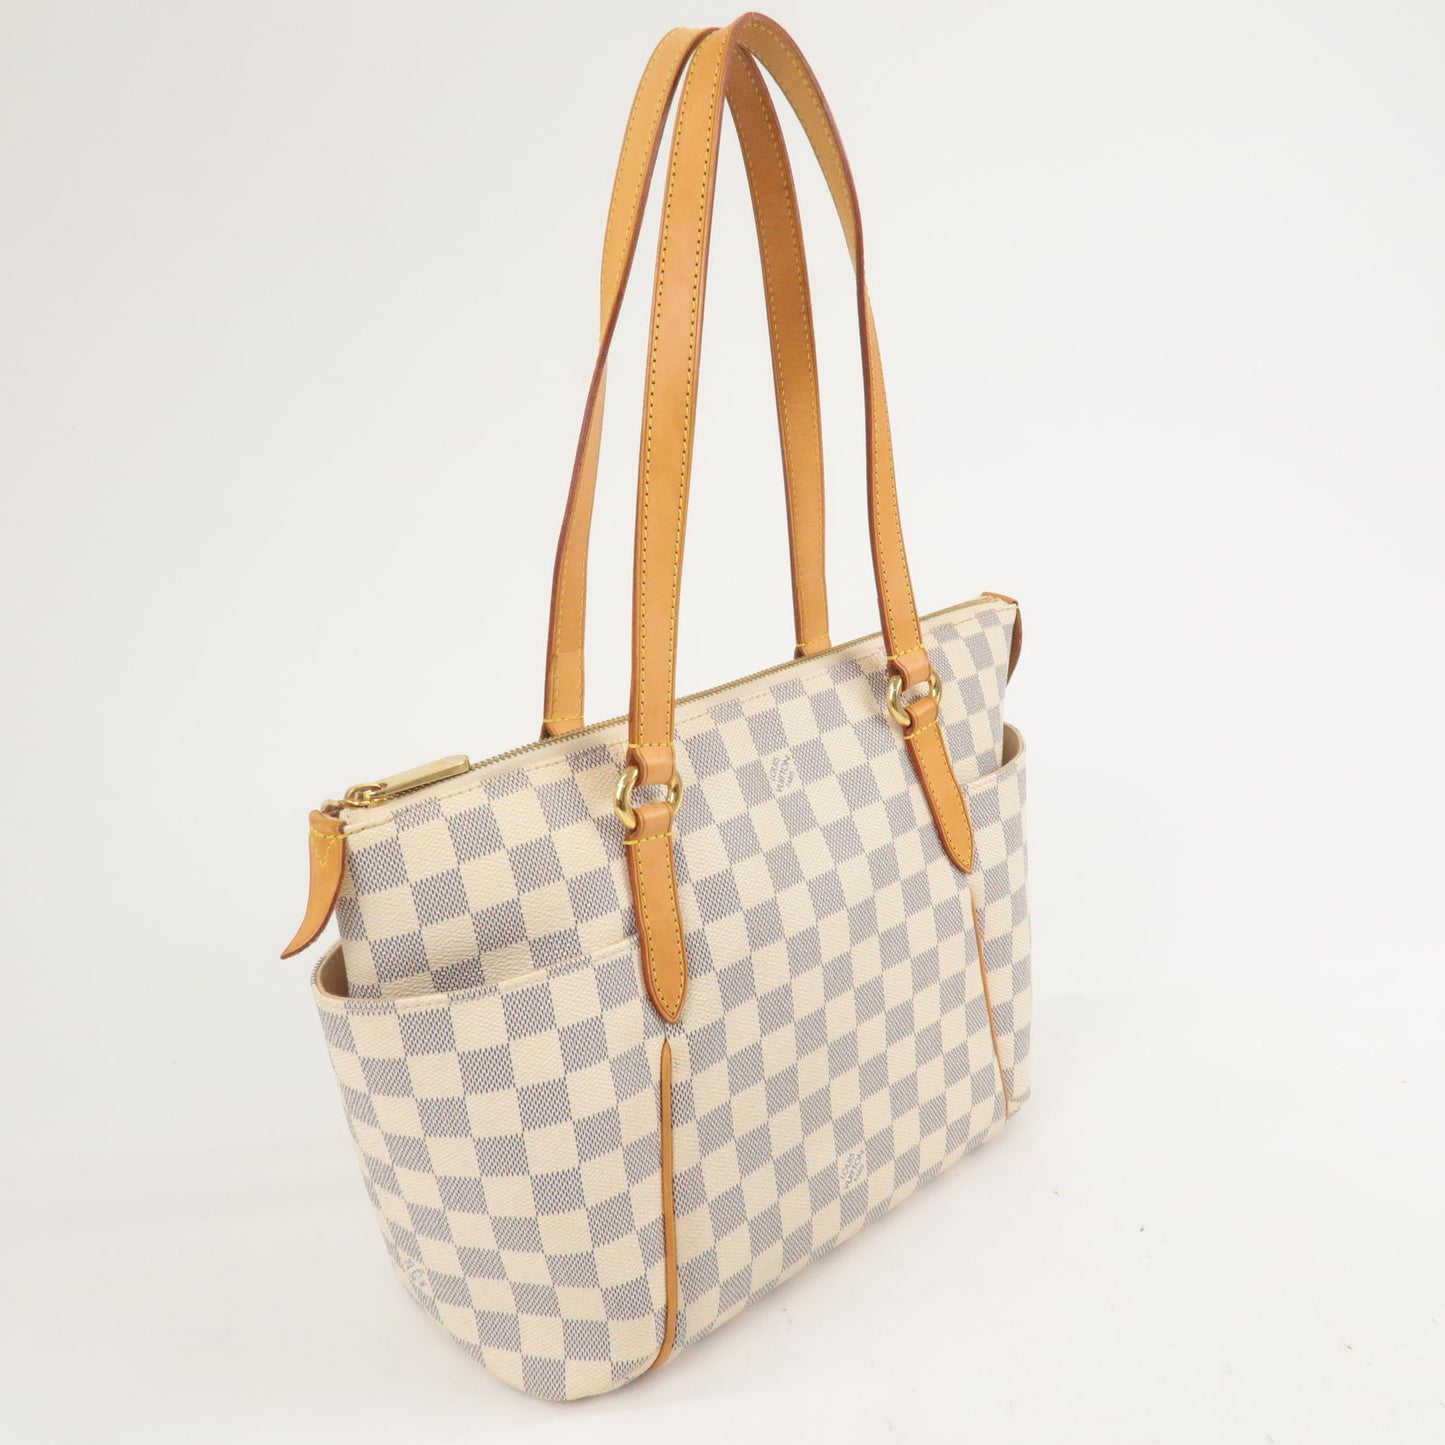 Handbags Louis Vuitton Louis Vuitton Totally PM N HANDBAG51261 Canvas Damier Azur Purse Handbag